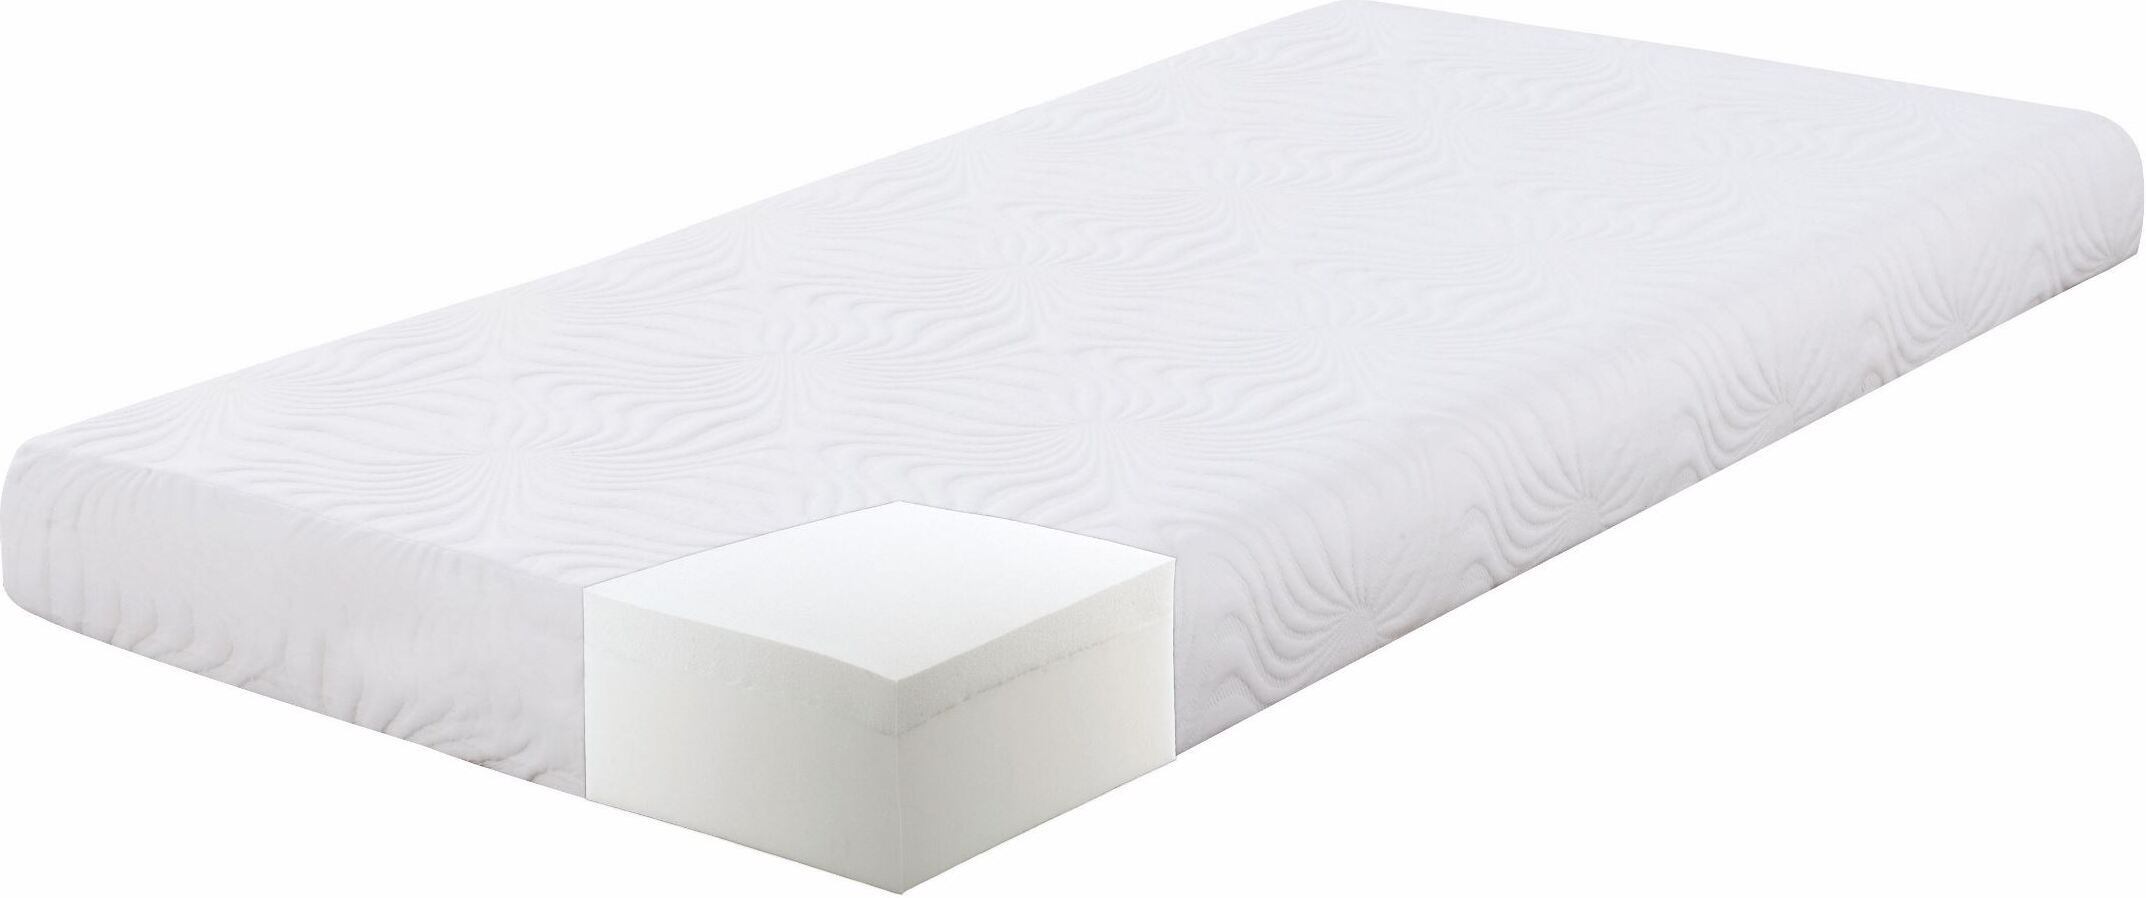 6 memory foam mattress twin